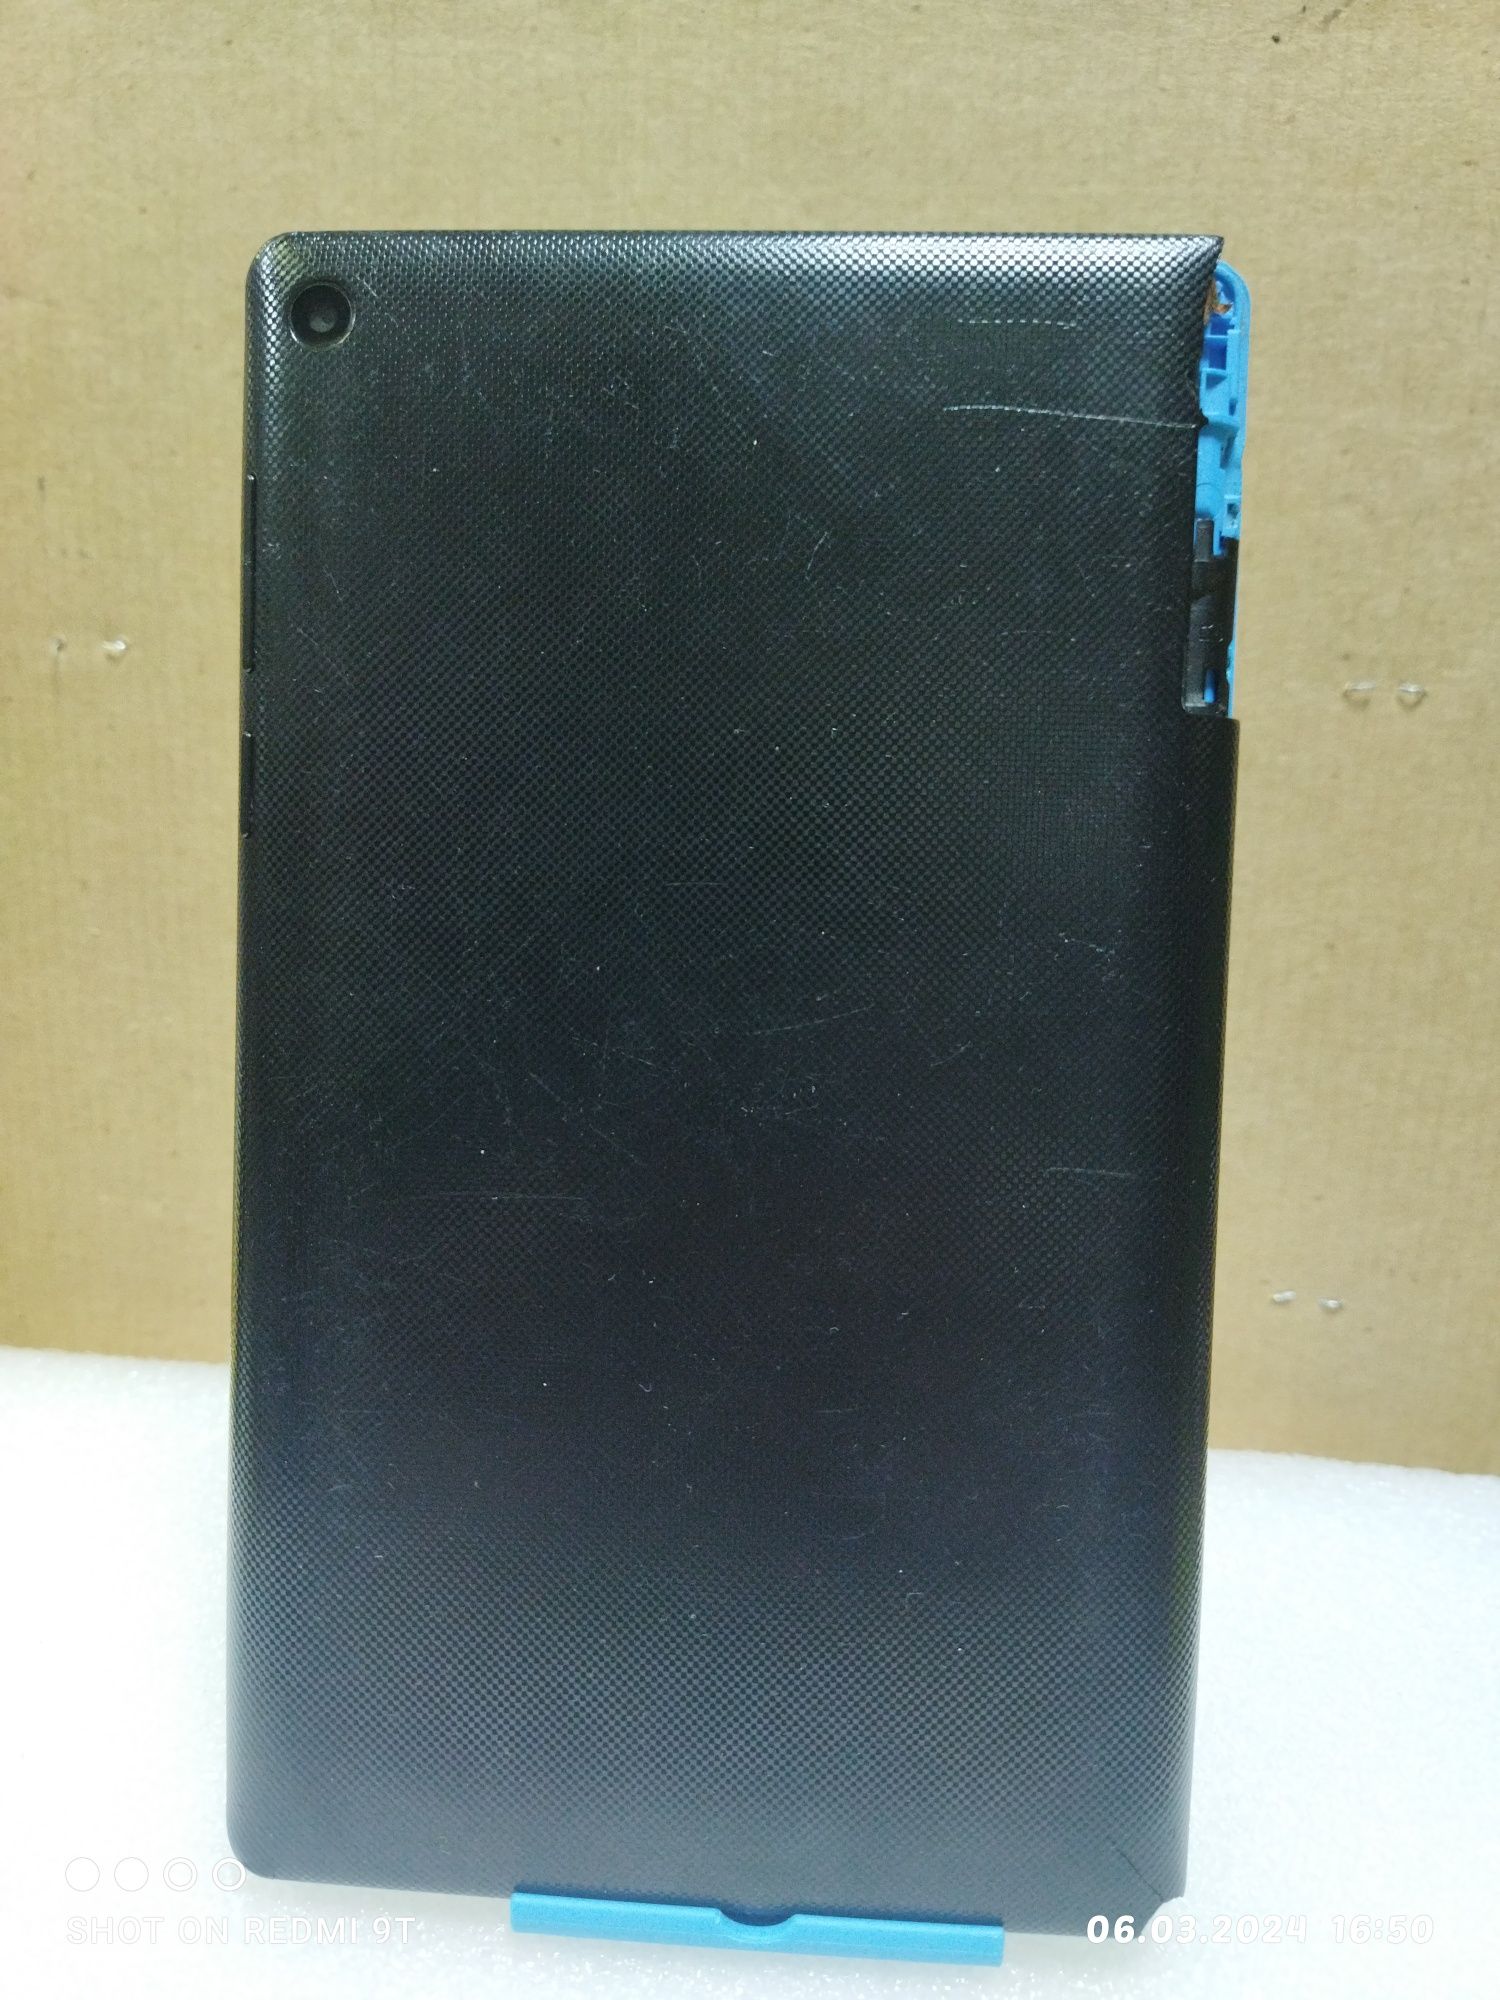 Планшет Lenovo TB3 710i память 8 Гб в хорошем состоянии